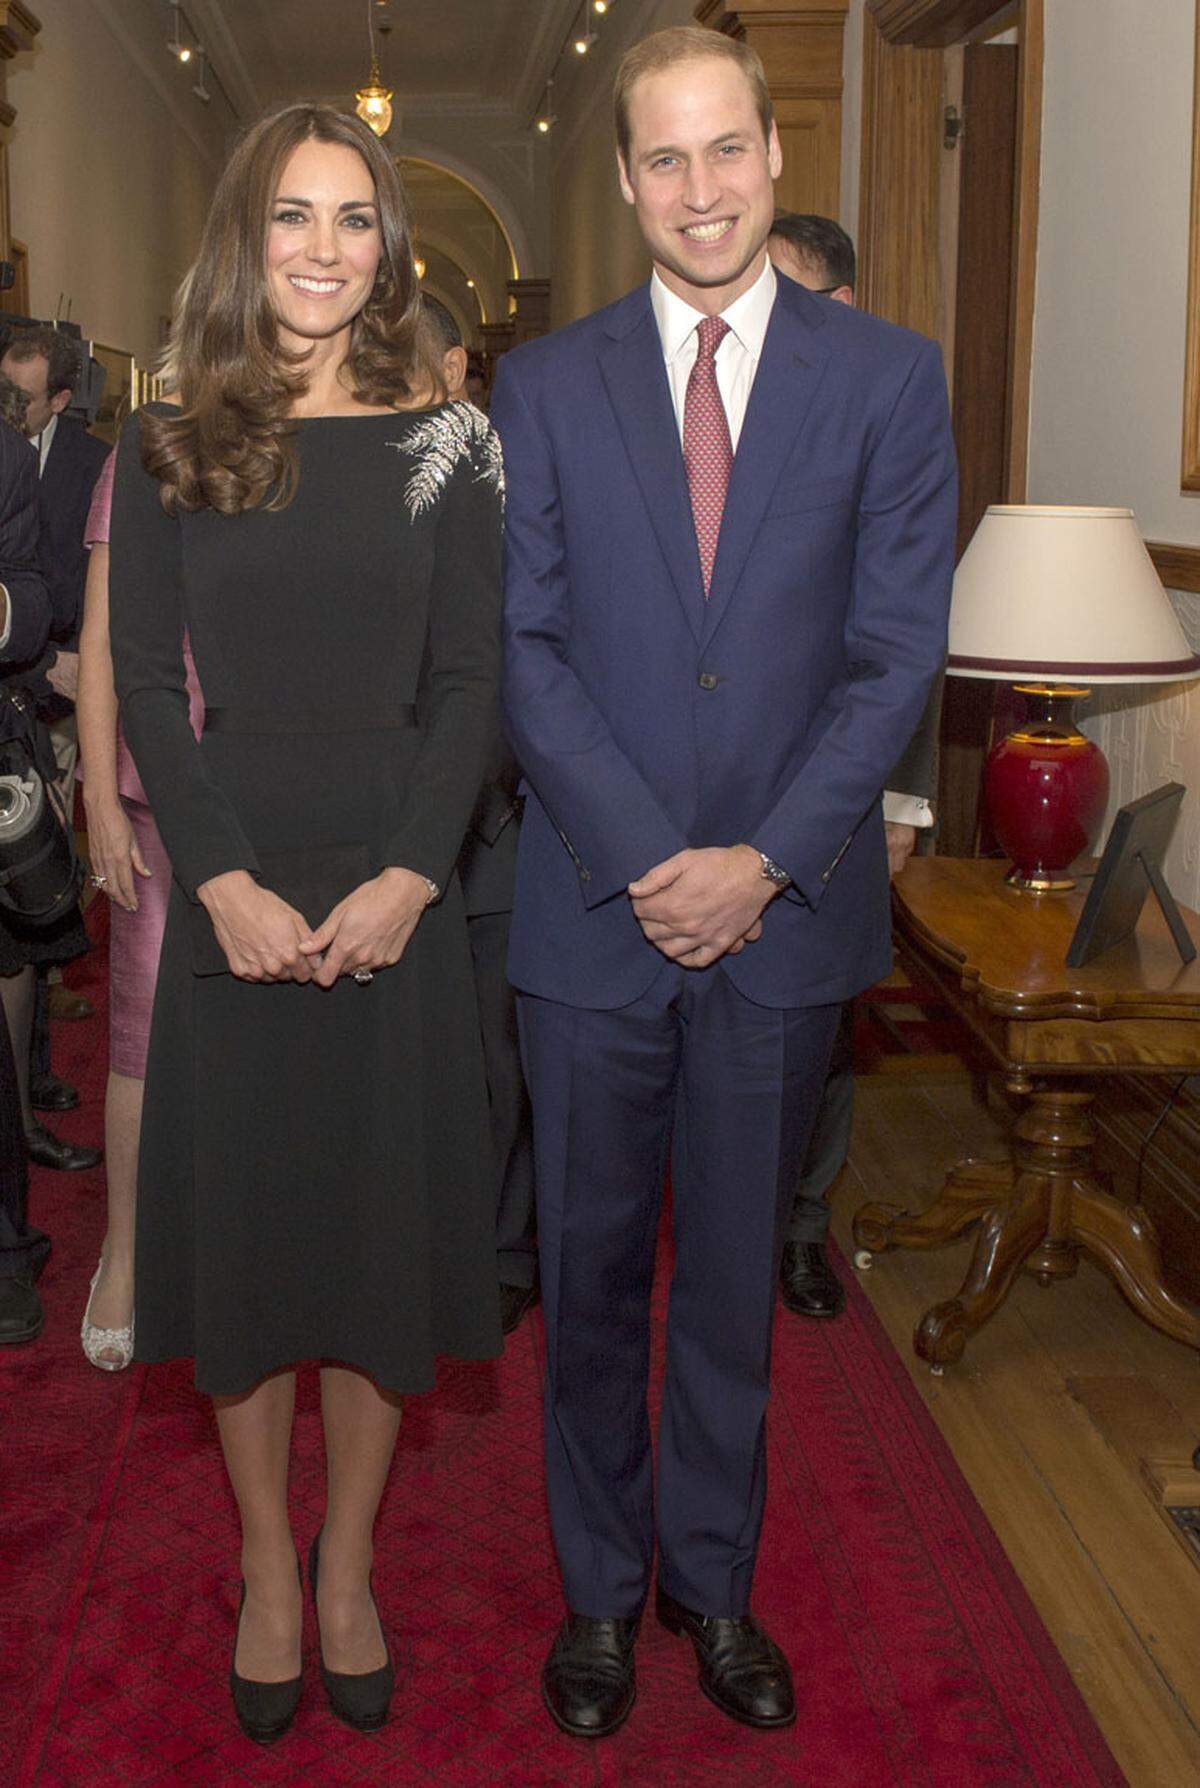 Bei einem Empfang im Regierungshaus wurde ein neues Bild der Queen präsentiert. Die Herzogin entschied sich für ein maßgeschneidertes Kleid von Jenny Packham mit einem bestickten Farn, dem Hoheitsabzeichen von Neuseeland.